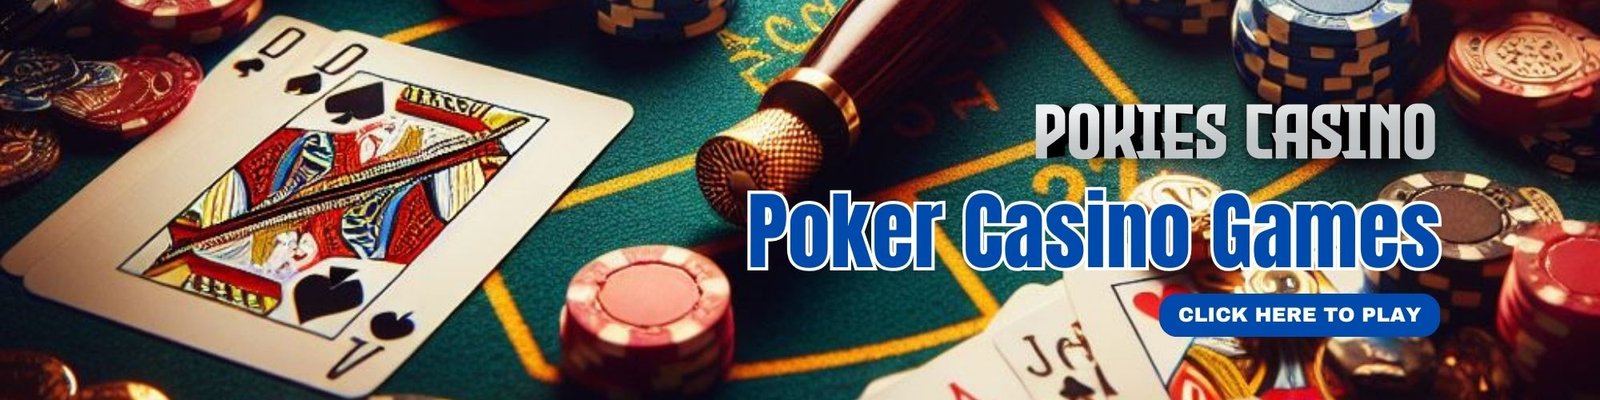 Poker Casino Games